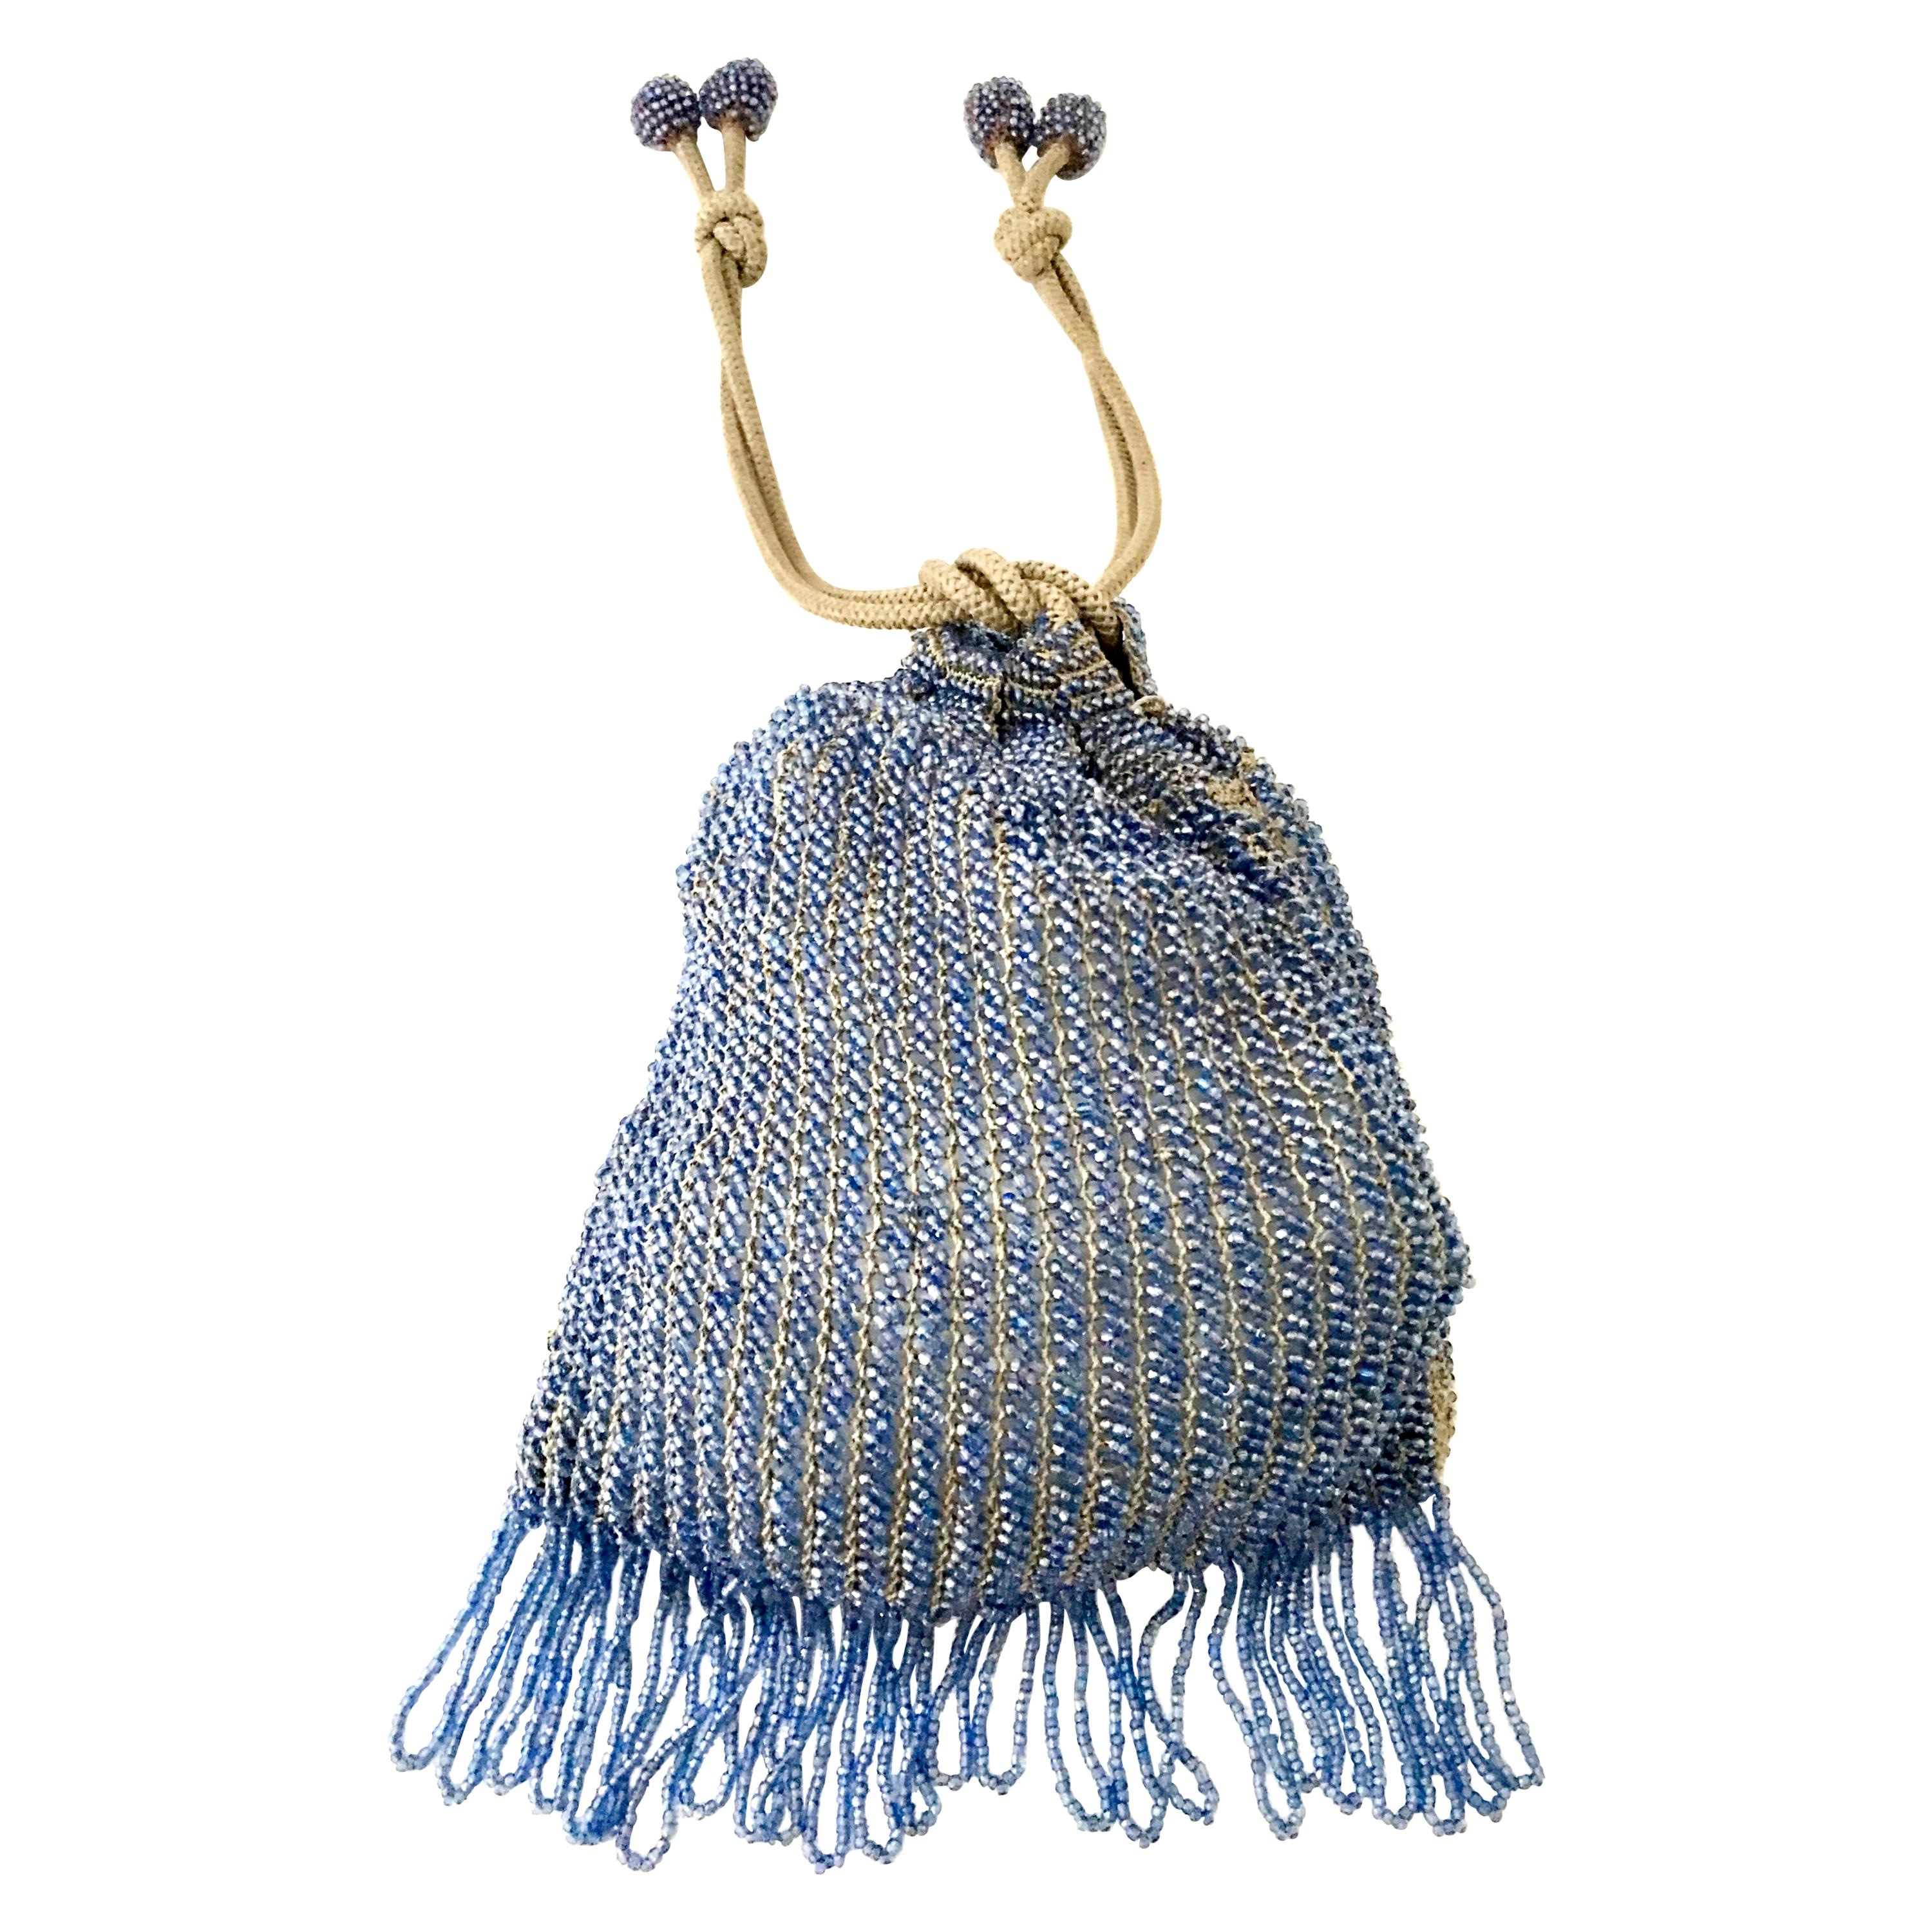 Antique Hand Cut Art Glass Bead Crochet Drawsting Evening Bag